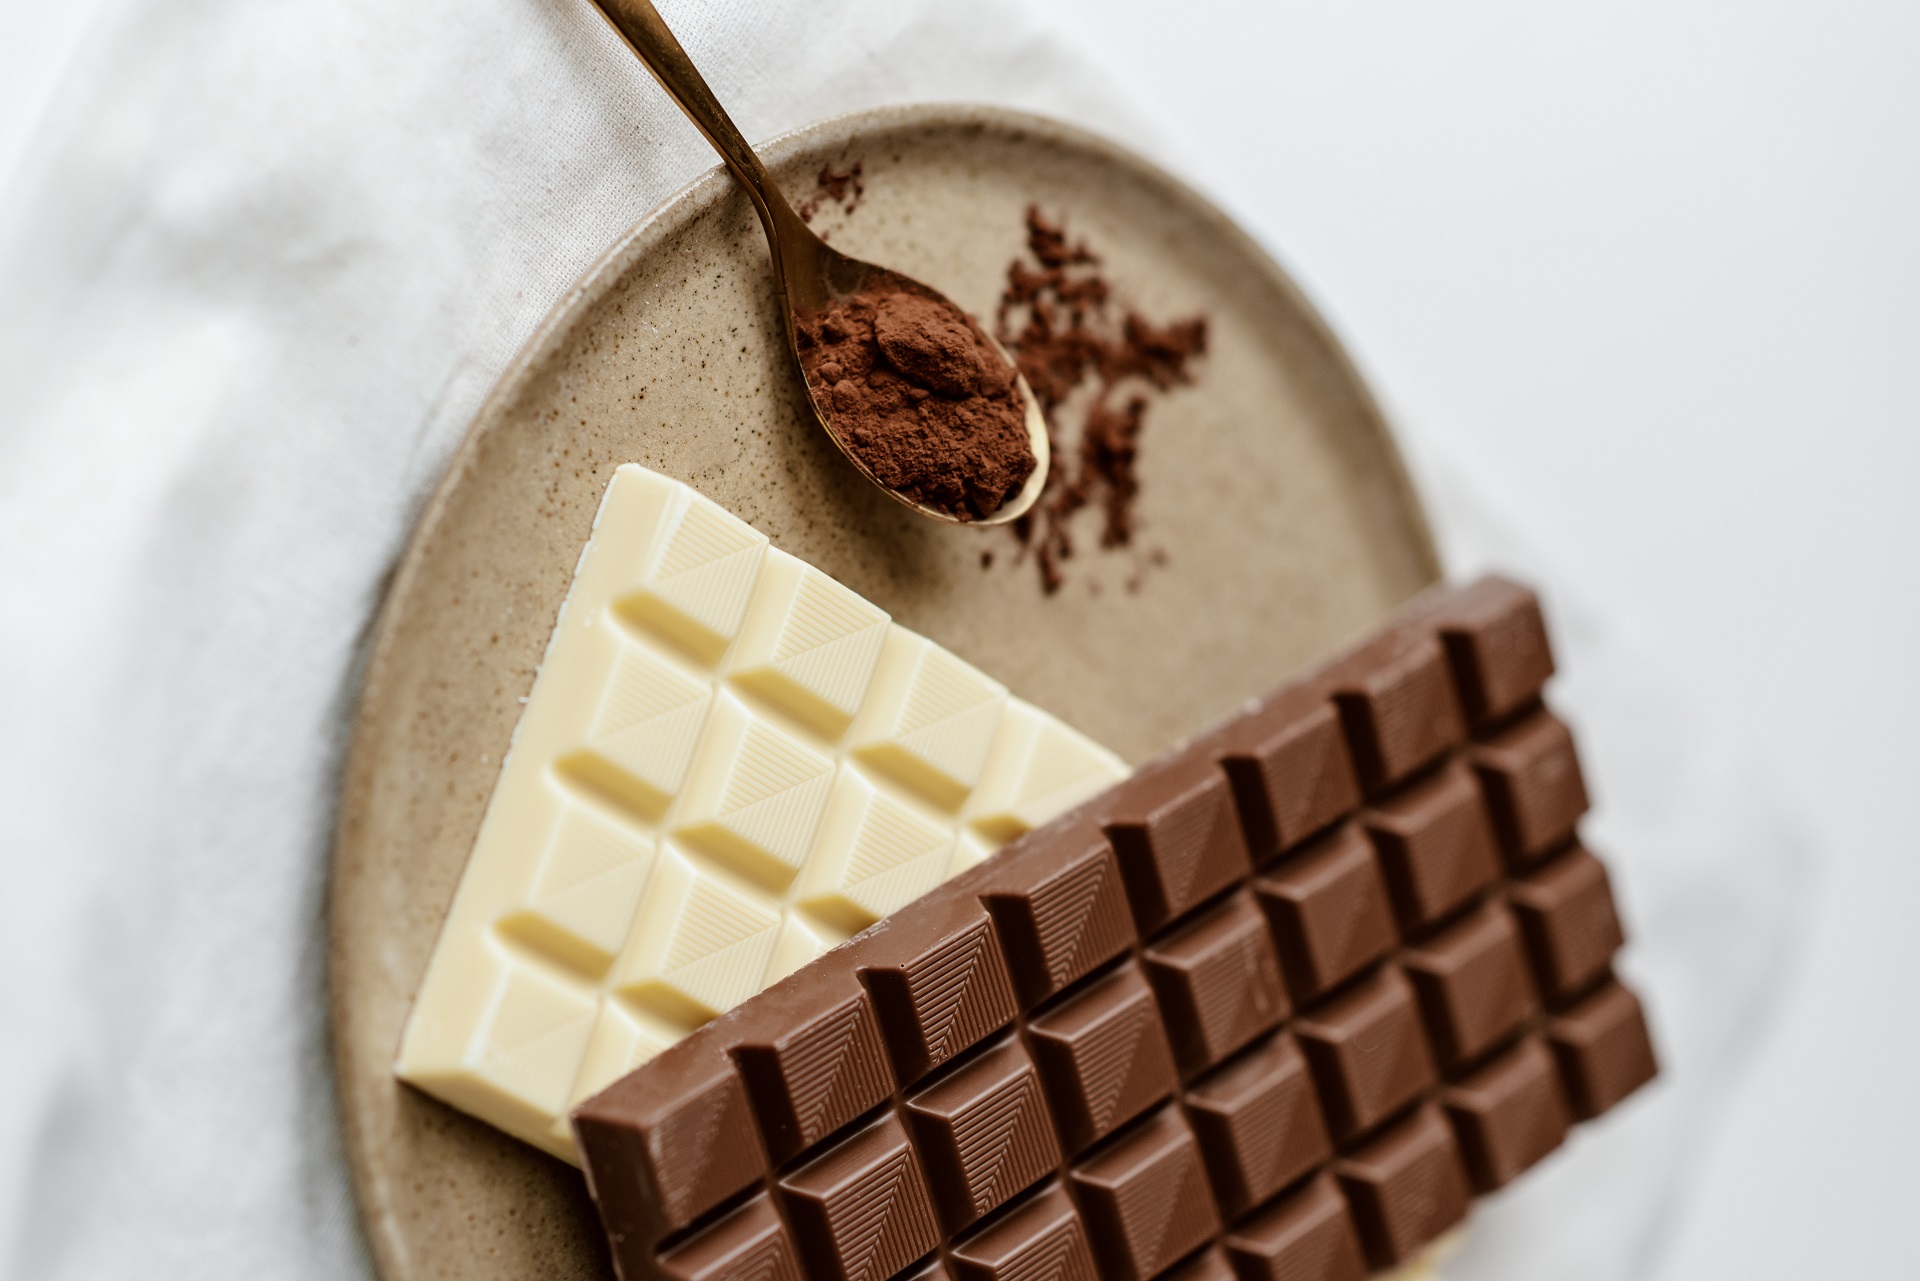 للشوكولاتة الداكنة العديد من الفوائد الصحية